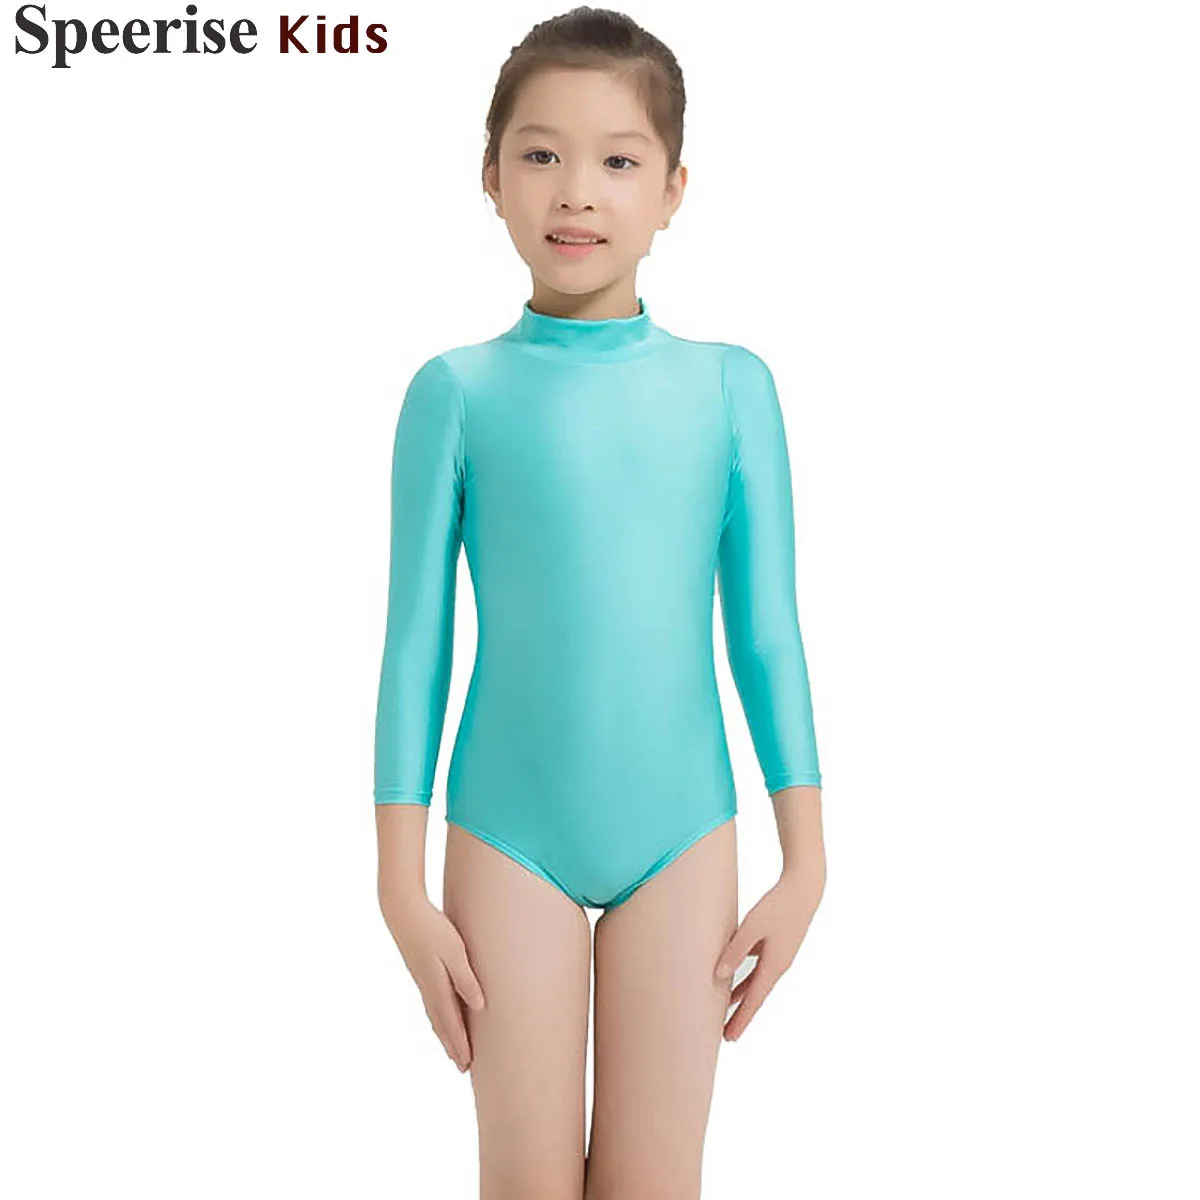 

Girl bodysuit ballet Dance Practice Clothes Suit Long Sleeve Leotards Lycra Dancewear For Teens Gymnastics suit Spandex Overalls